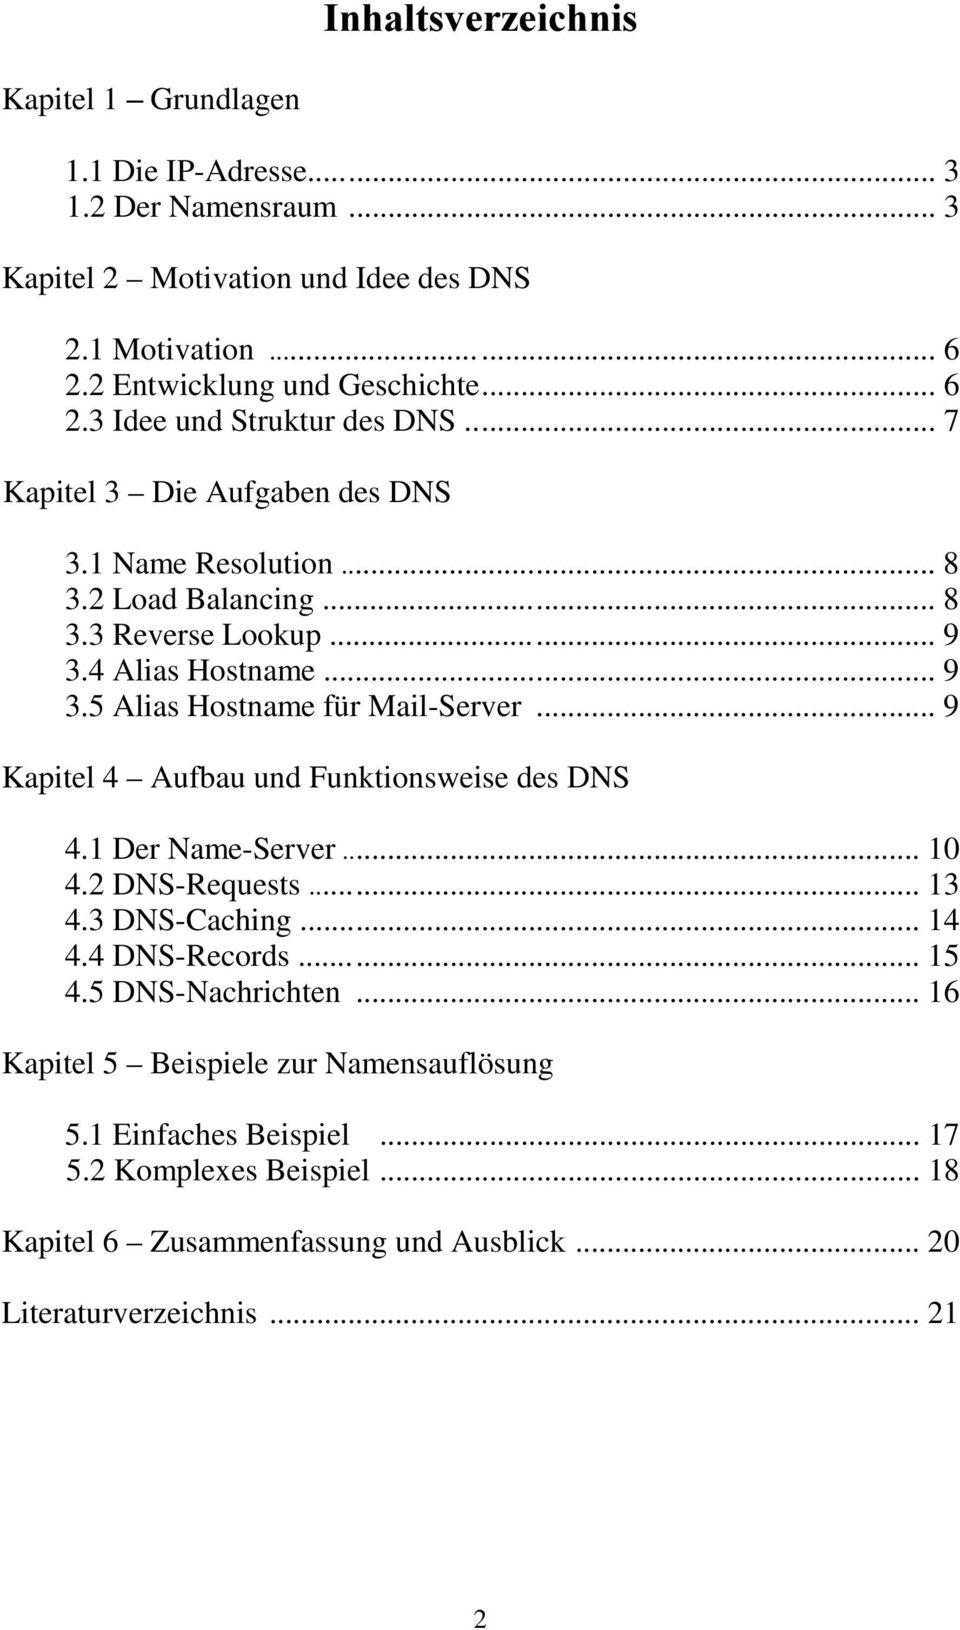 .. 9 Kapitel 4 Aufbau und Funktionsweise des DNS 4.1 Der Name-Server... 10 4.2 DNS-Requests... 13 4.3 DNS-Caching... 14 4.4 DNS-Records... 15 4.5 DNS-Nachrichten.